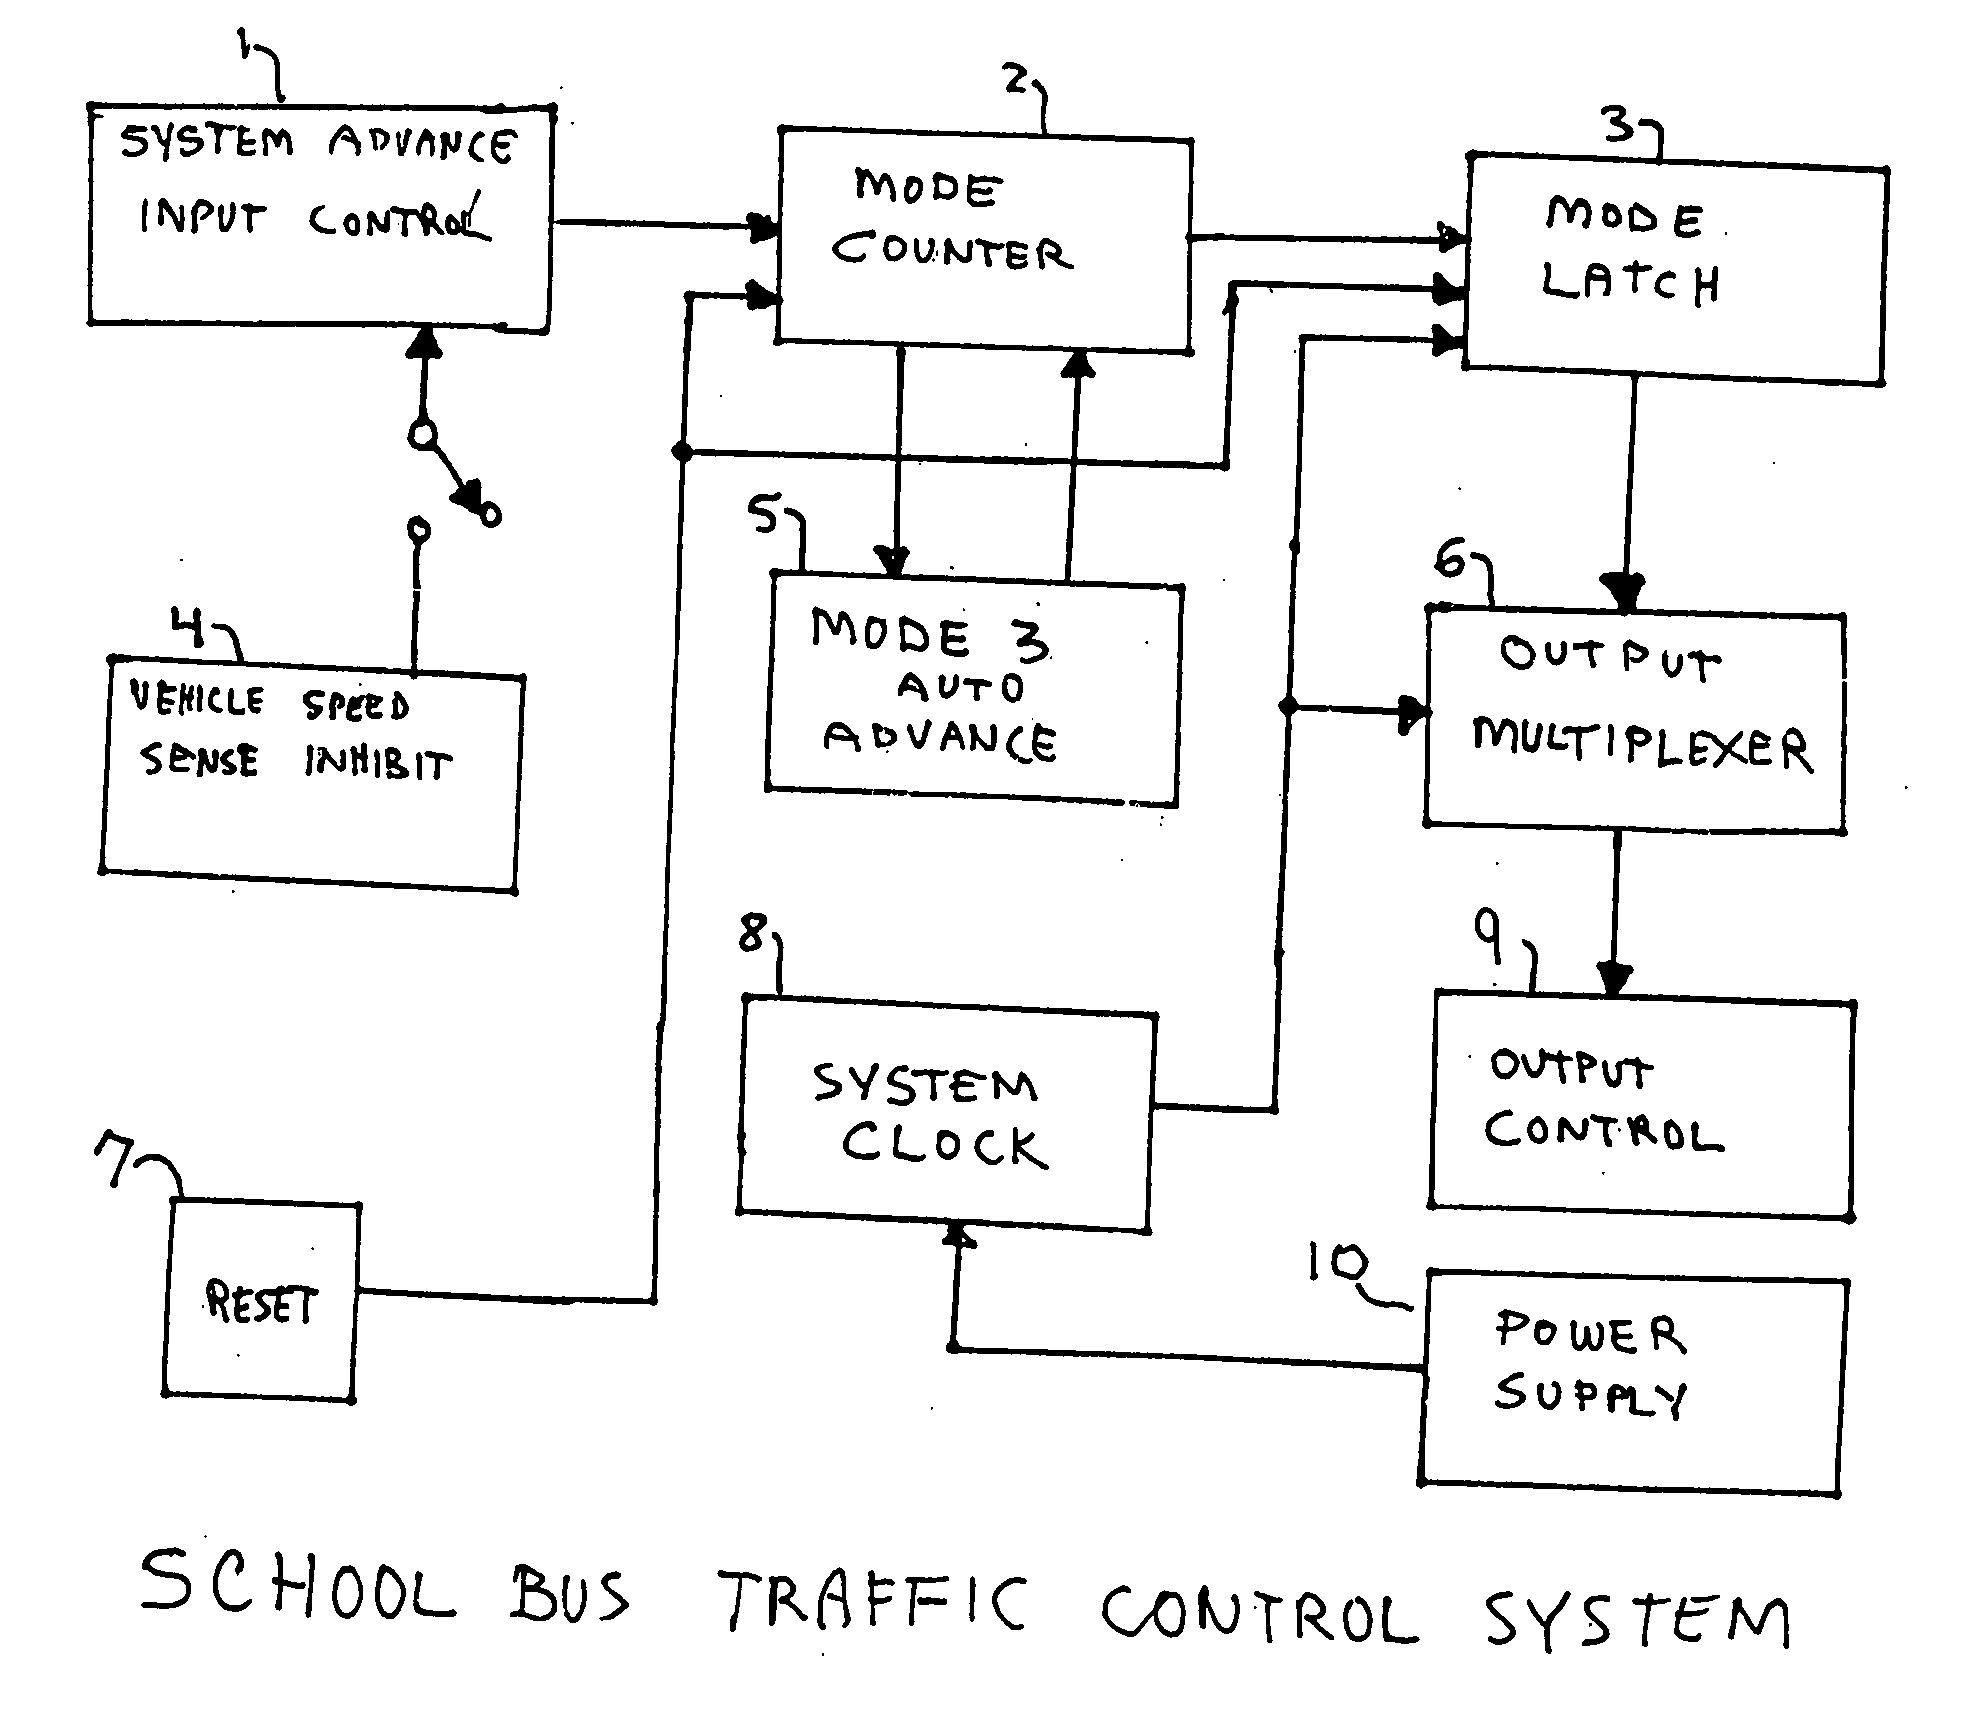 School bus traffic control system